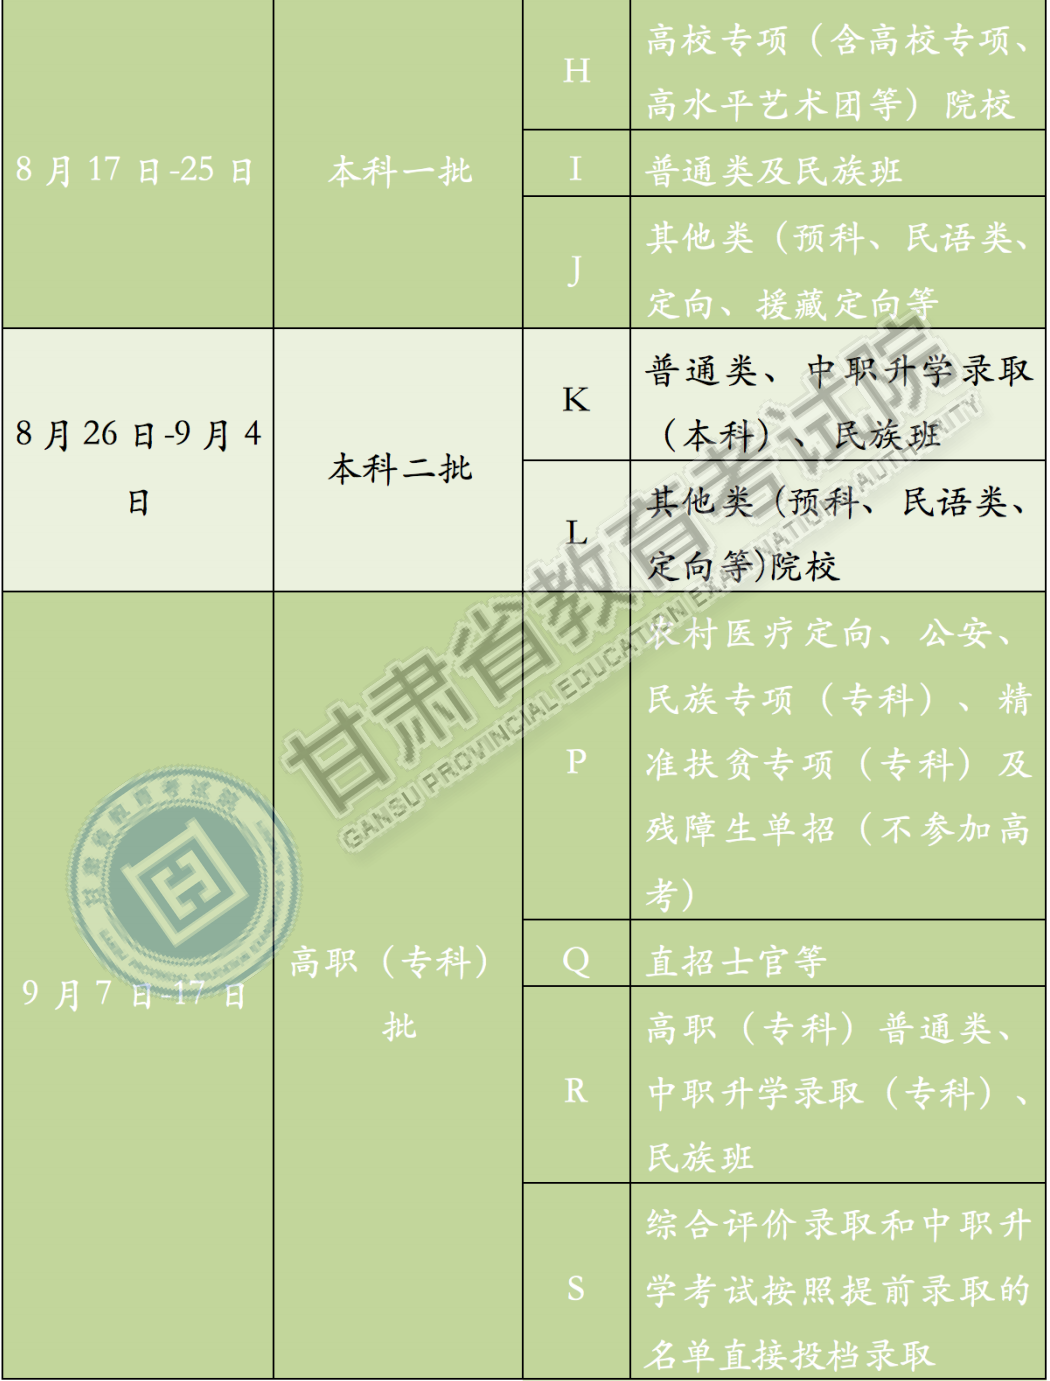 2020年甘肃省普通高校招生录取结果查询及录取工作日程表